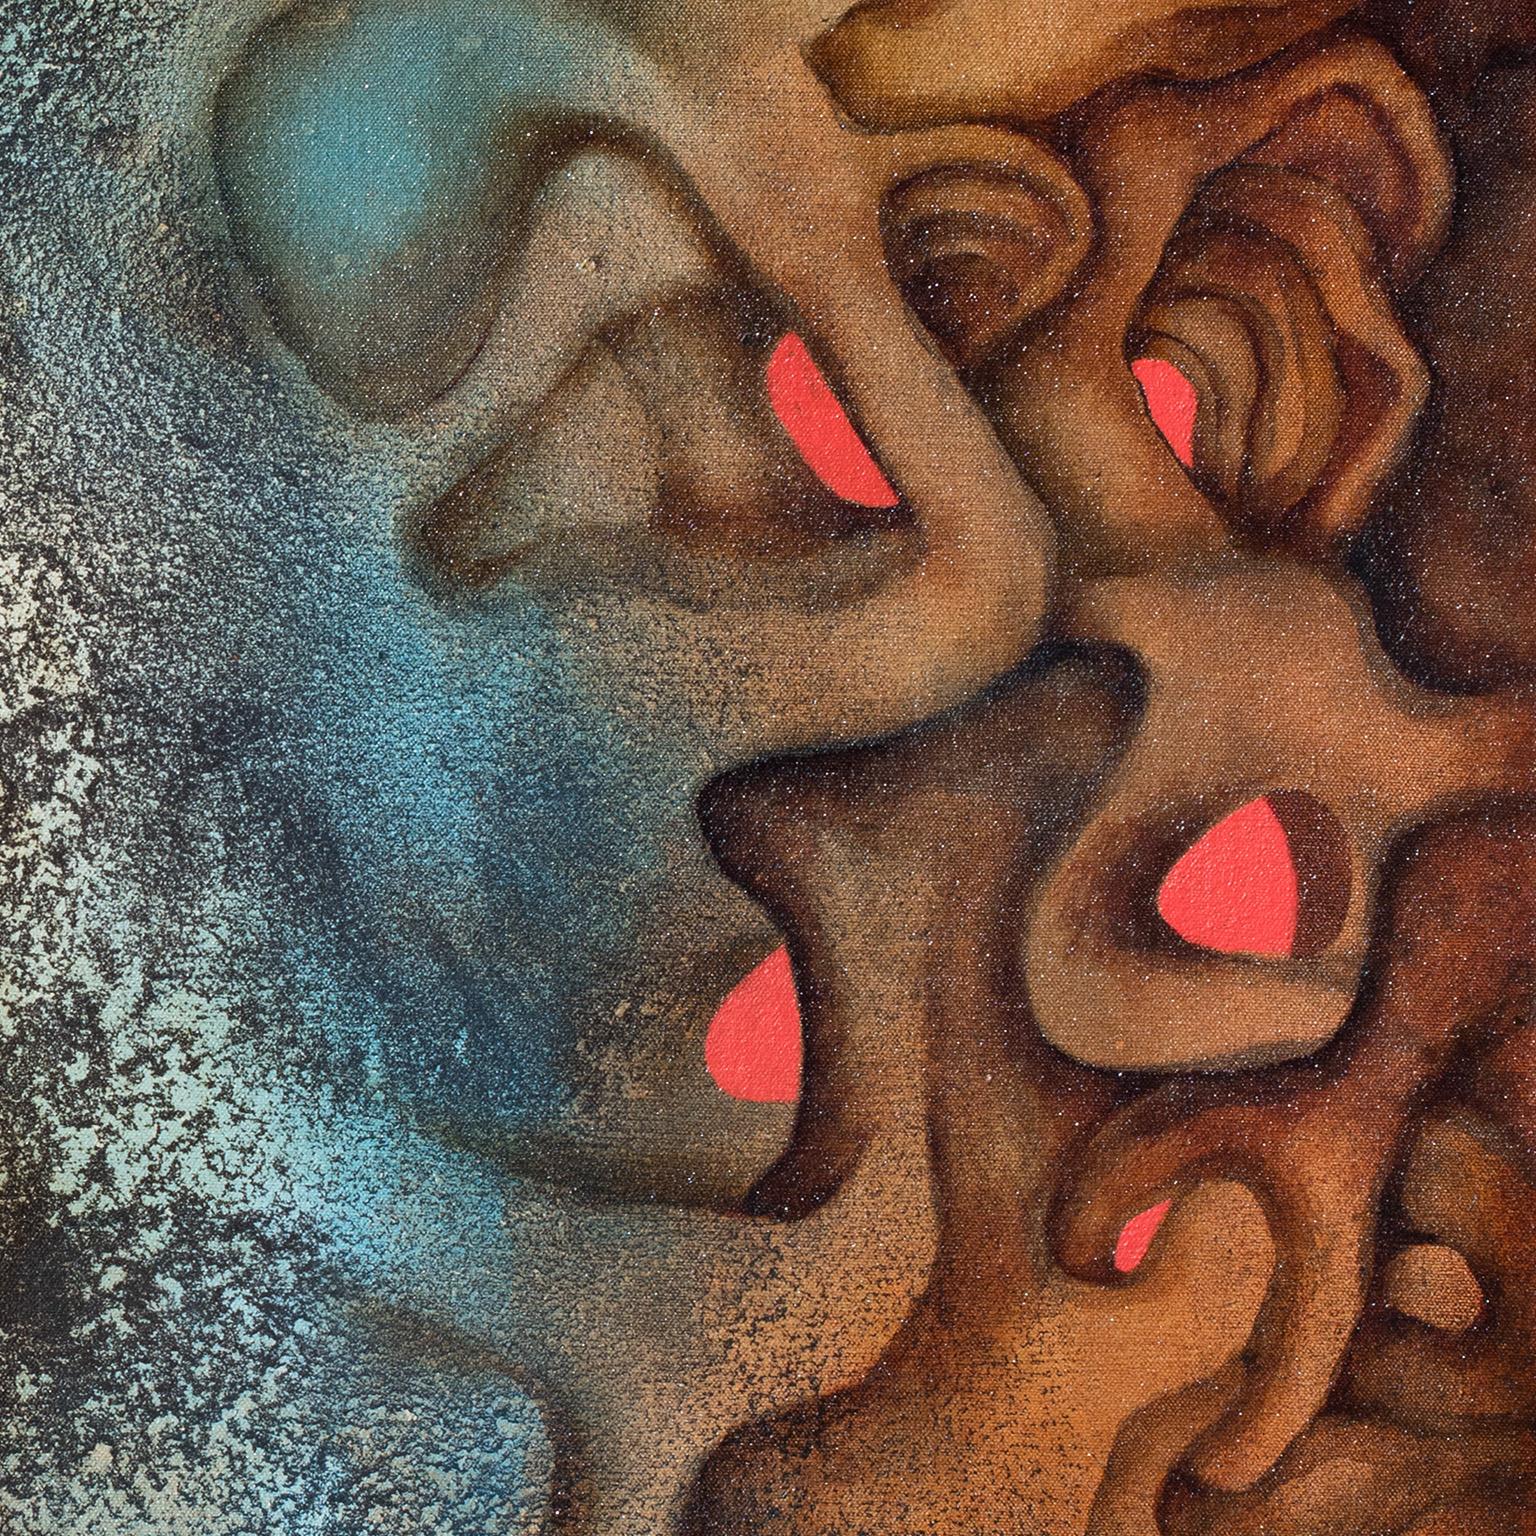 Méduse - mythologie grecque, peinture à l'huile figurative abstraite de Versus, couleur terre - Contemporain Painting par Gian Berto Vanni